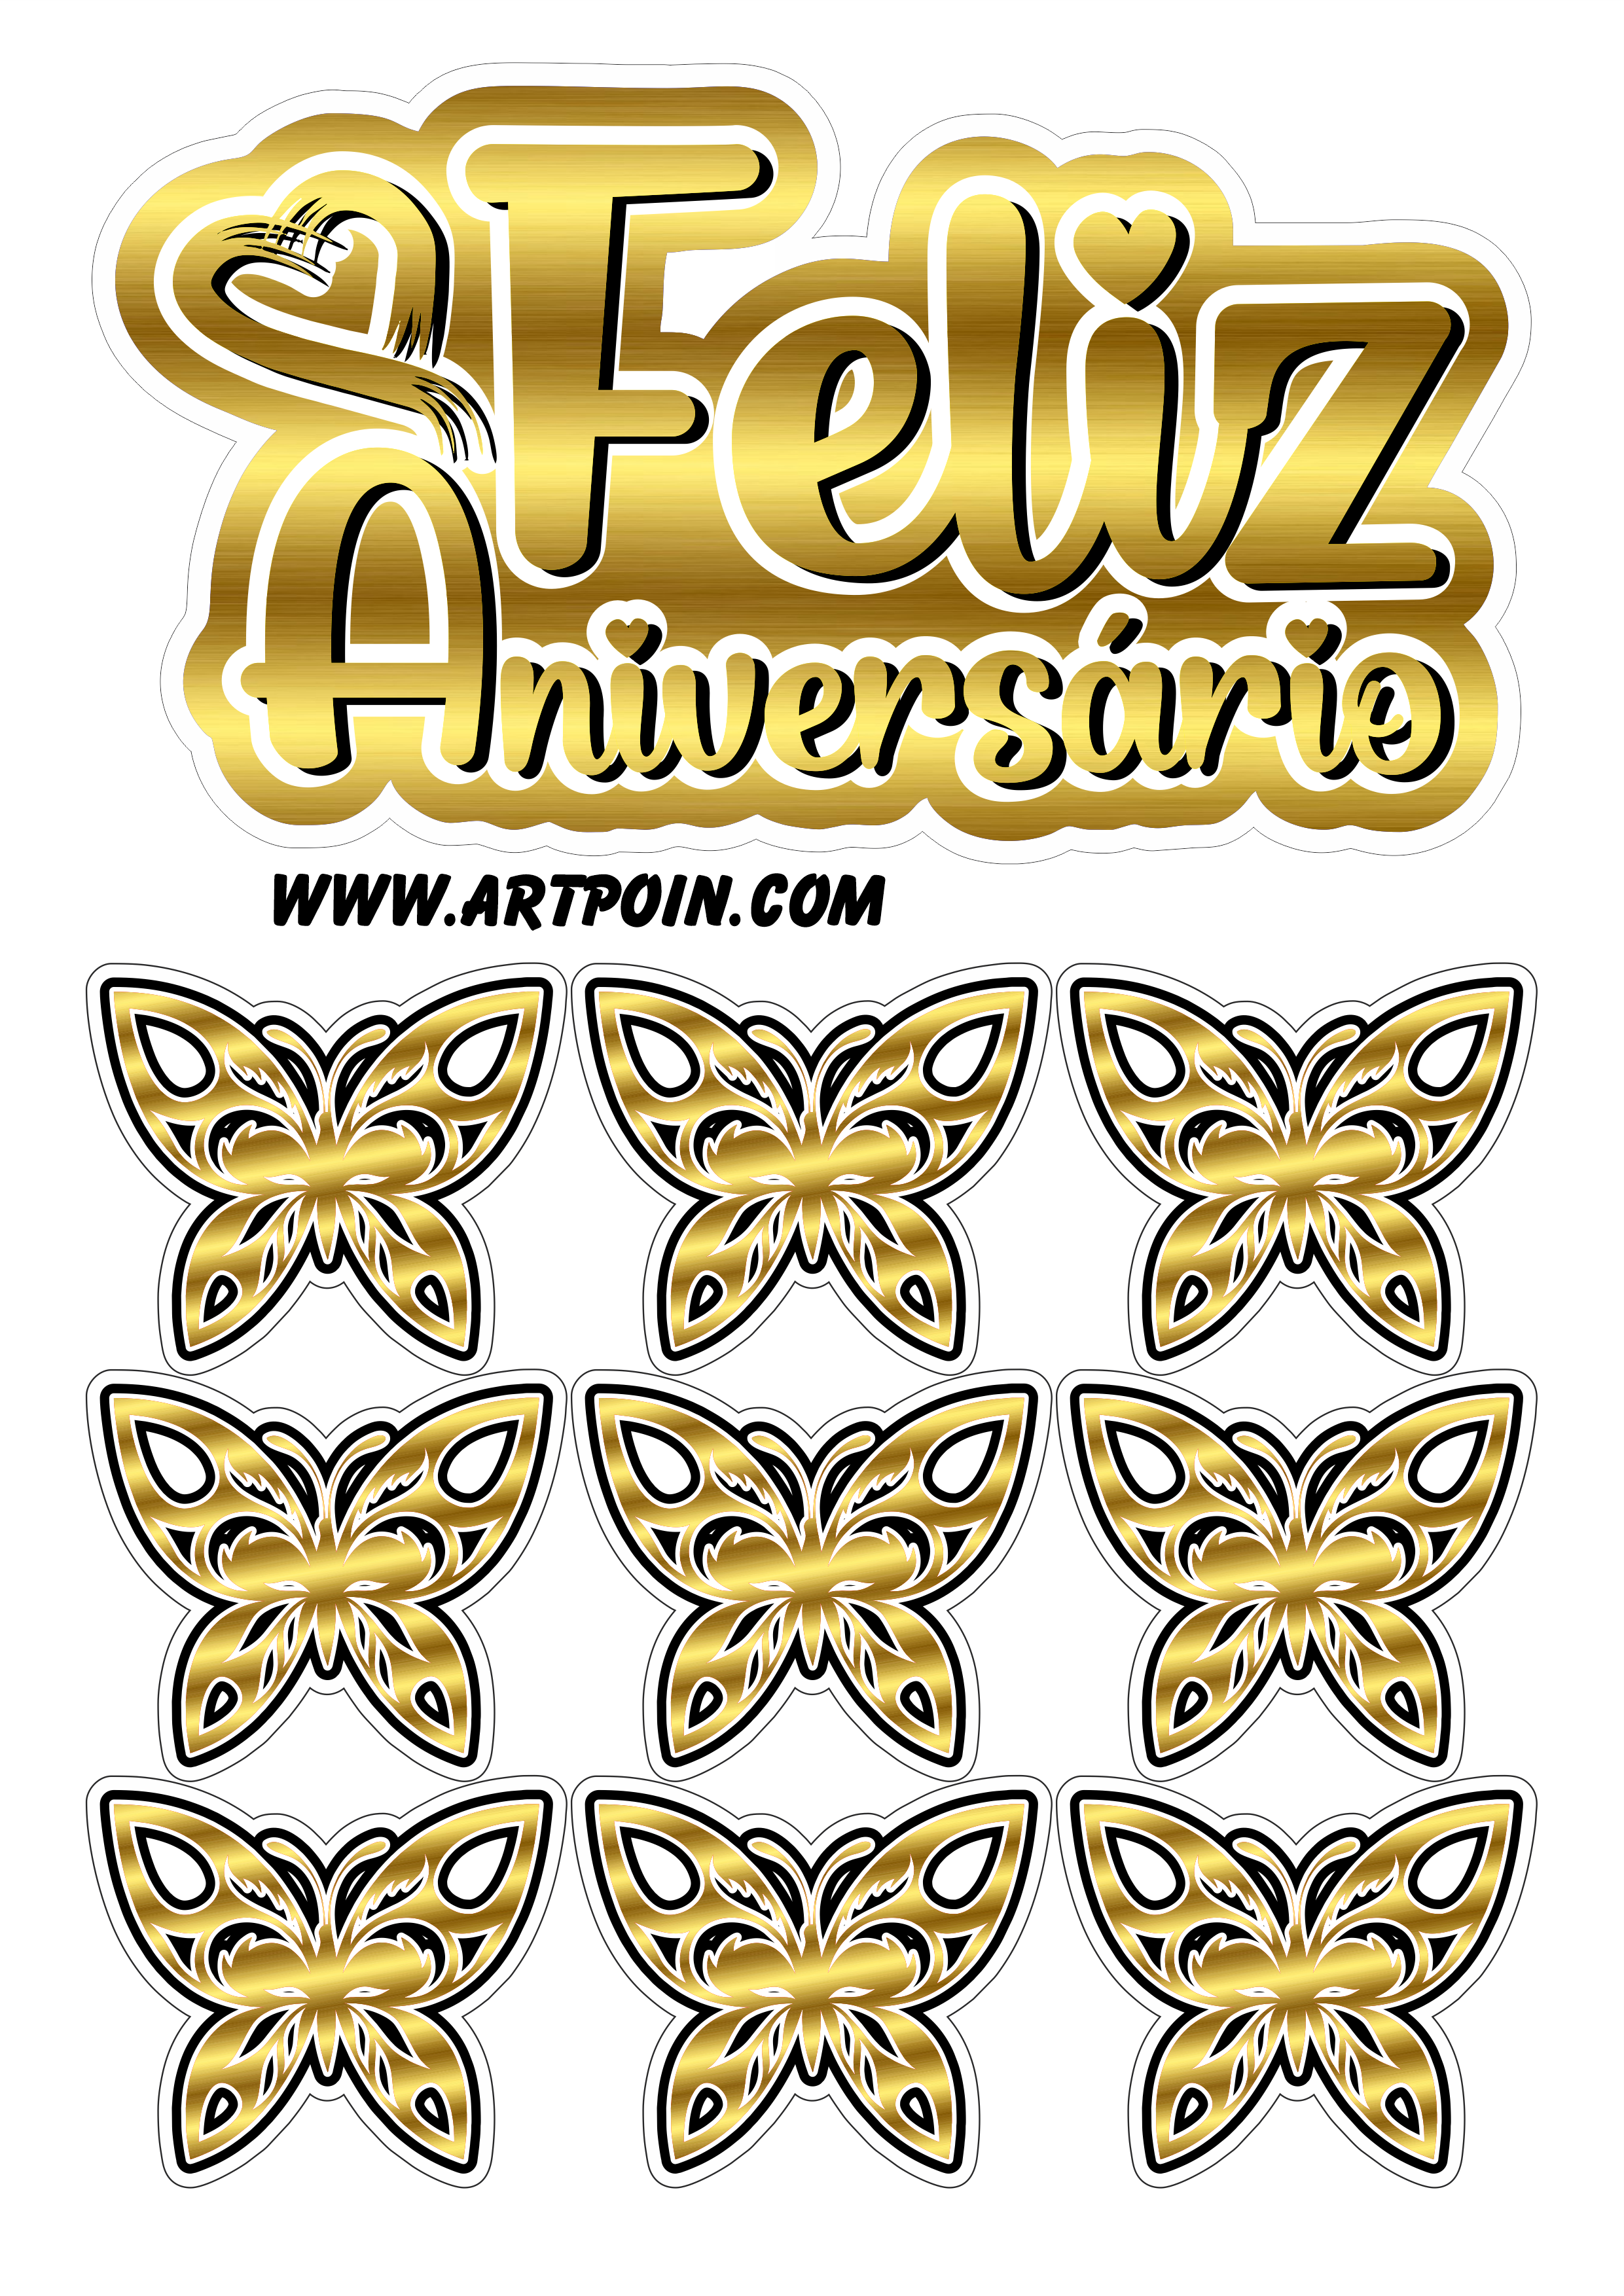 Topo de bolo dourado com borboletas feliz aniversário decoração de festa temática confeitaria personalizada png